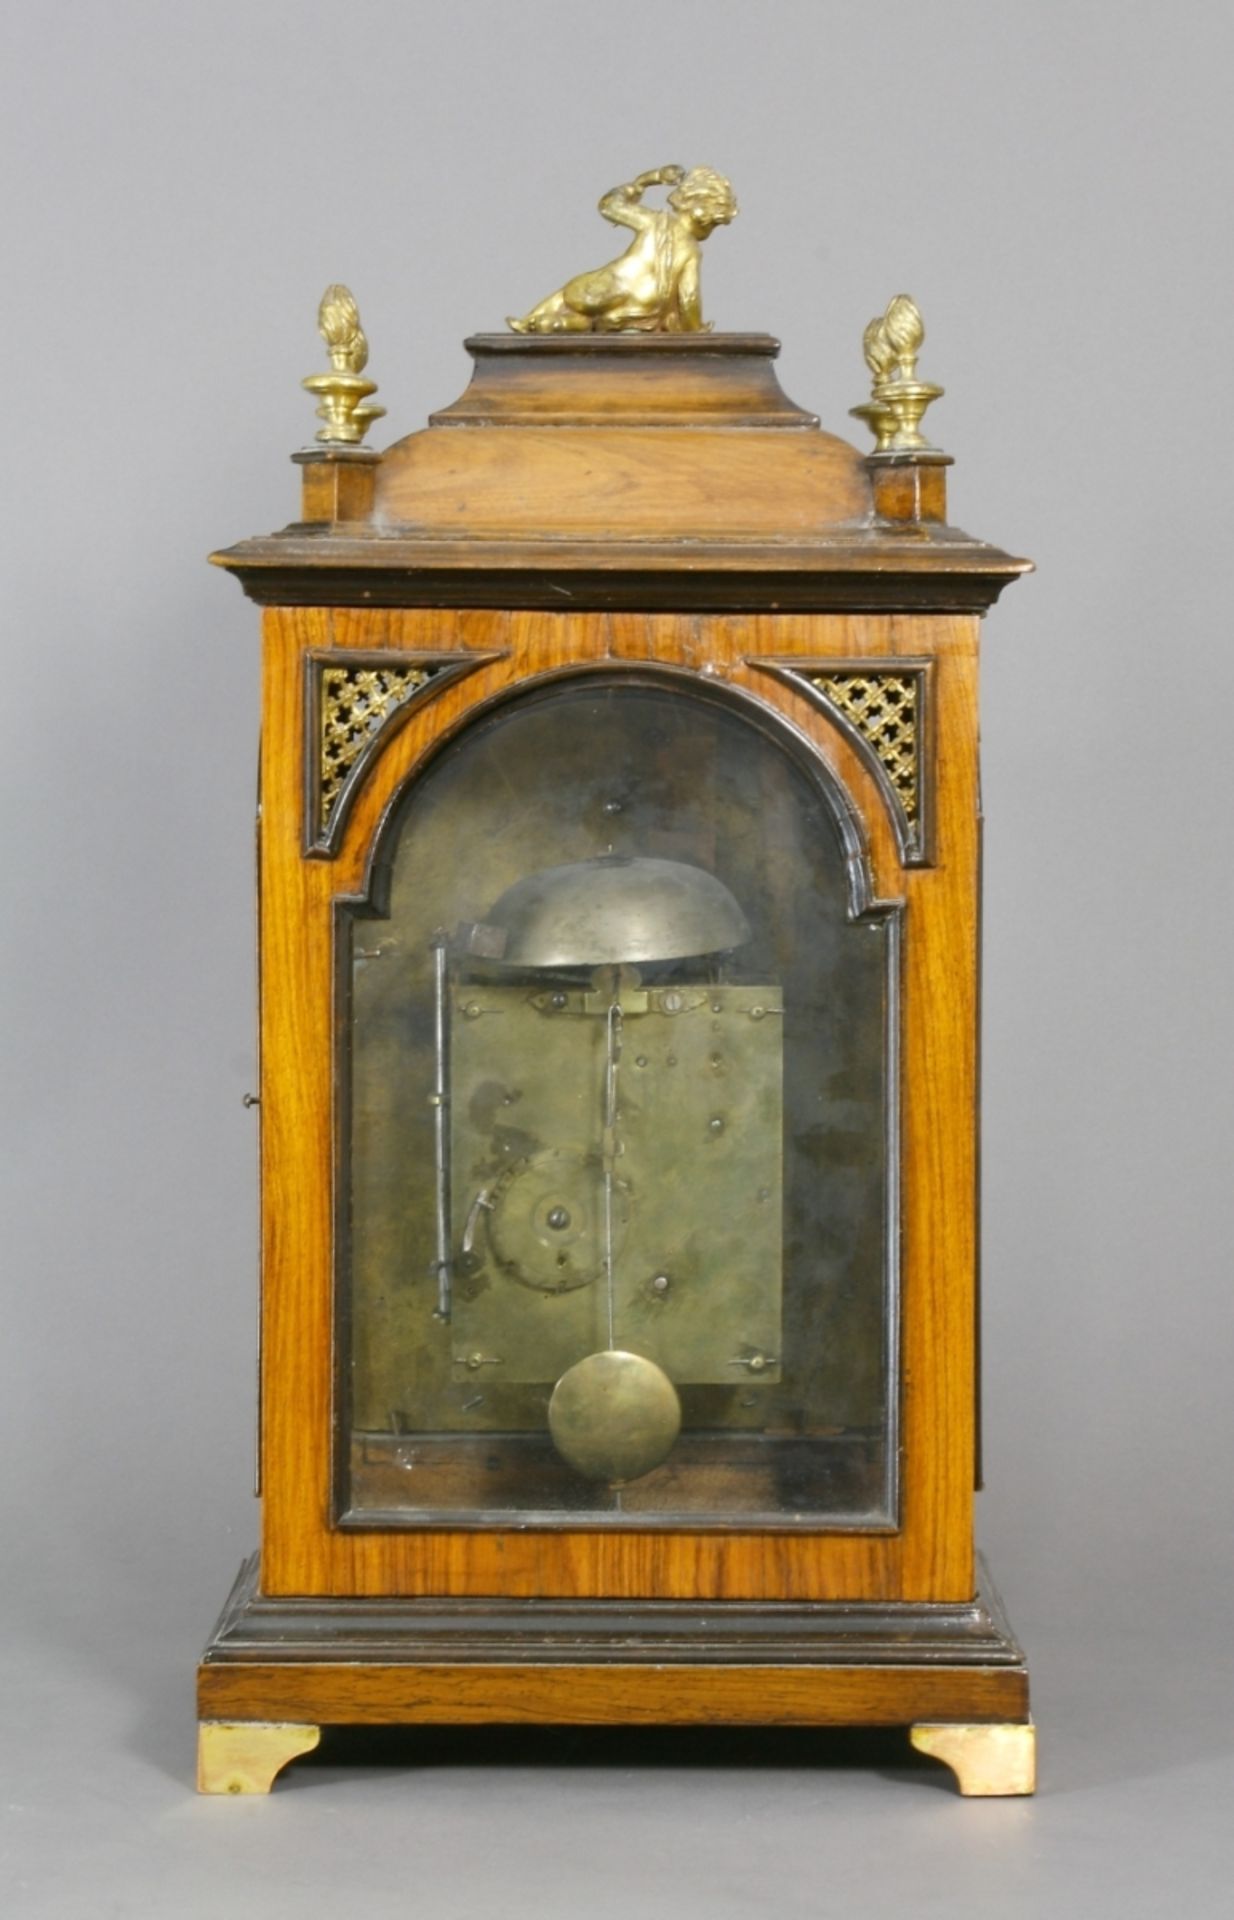 Uhr, Bracket Clock Stil, England - Image 3 of 4